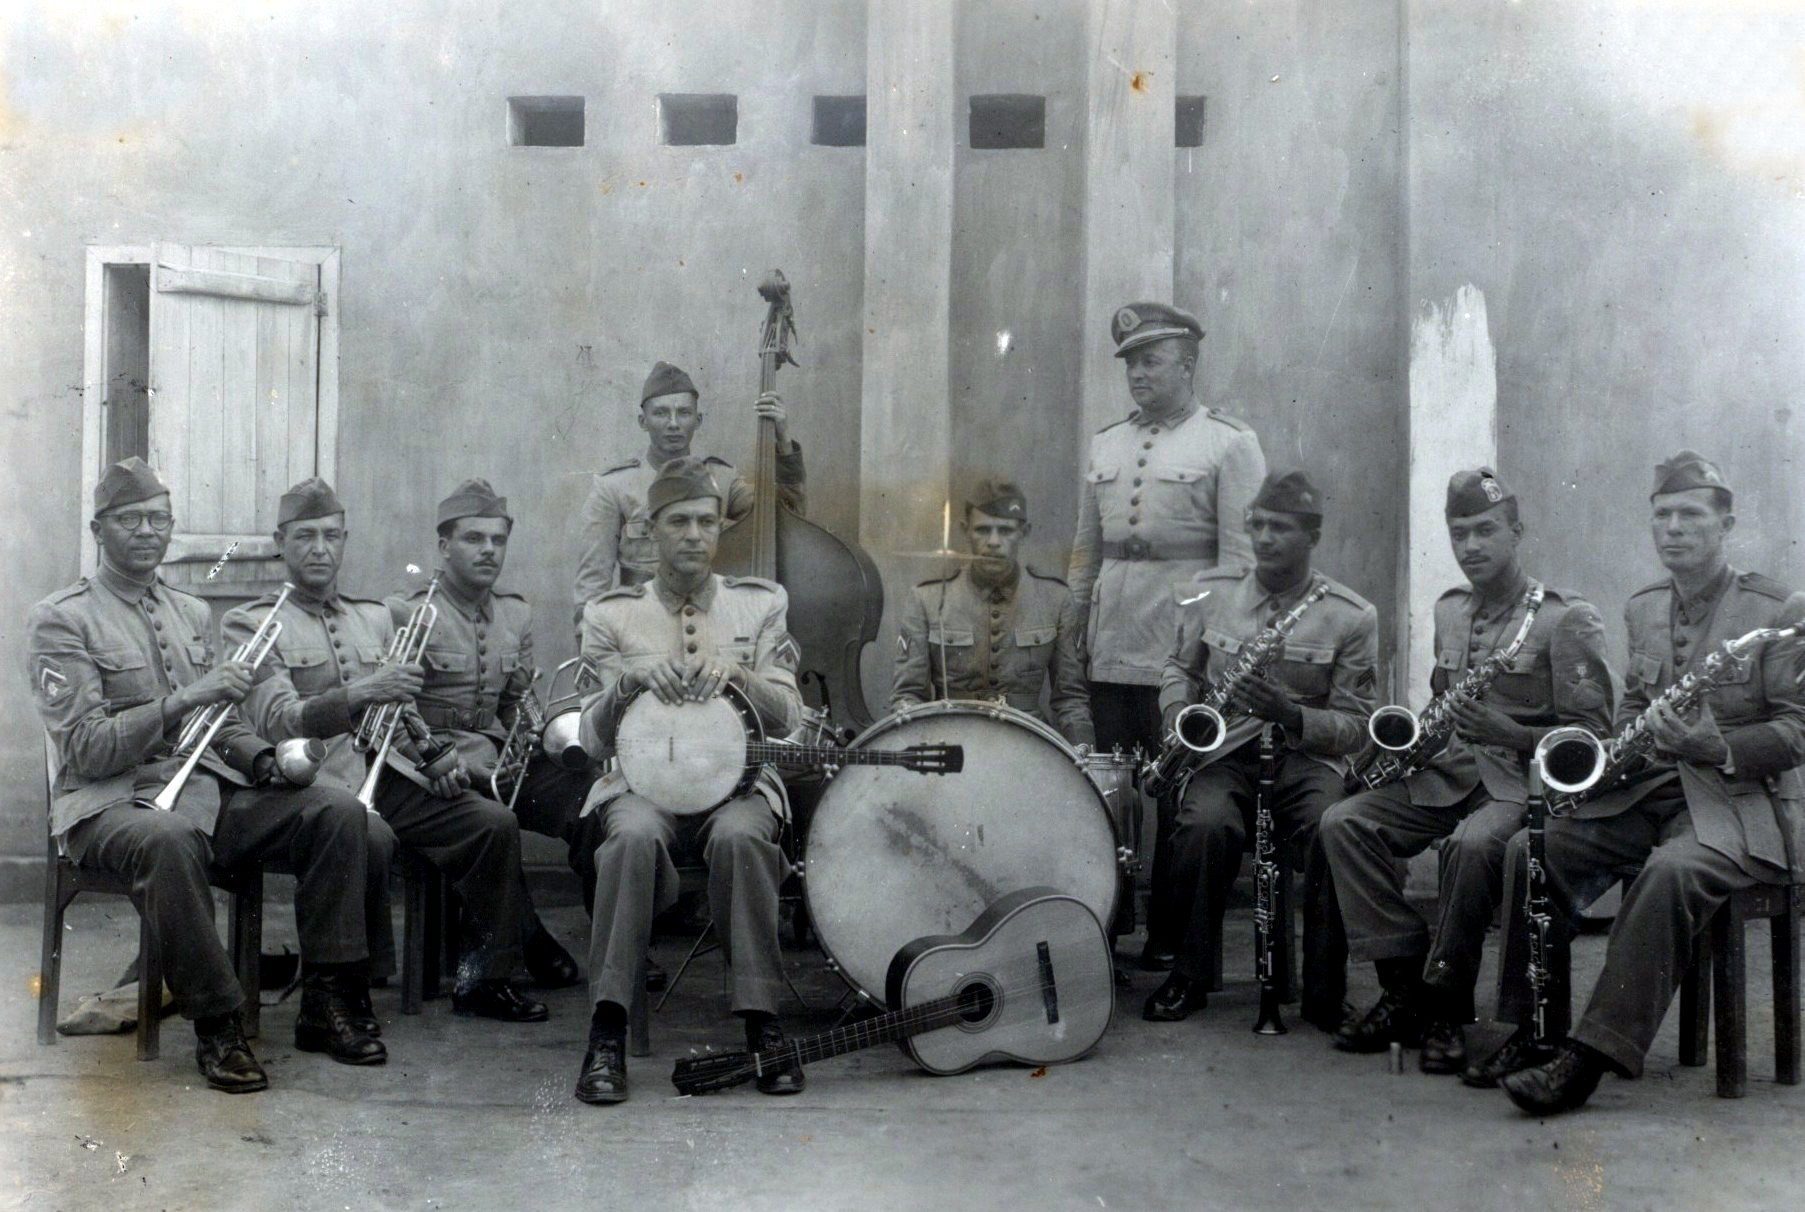 Banda do 11º Regimento de Infantaria na Época da Guerra. FOTO: Reprodução